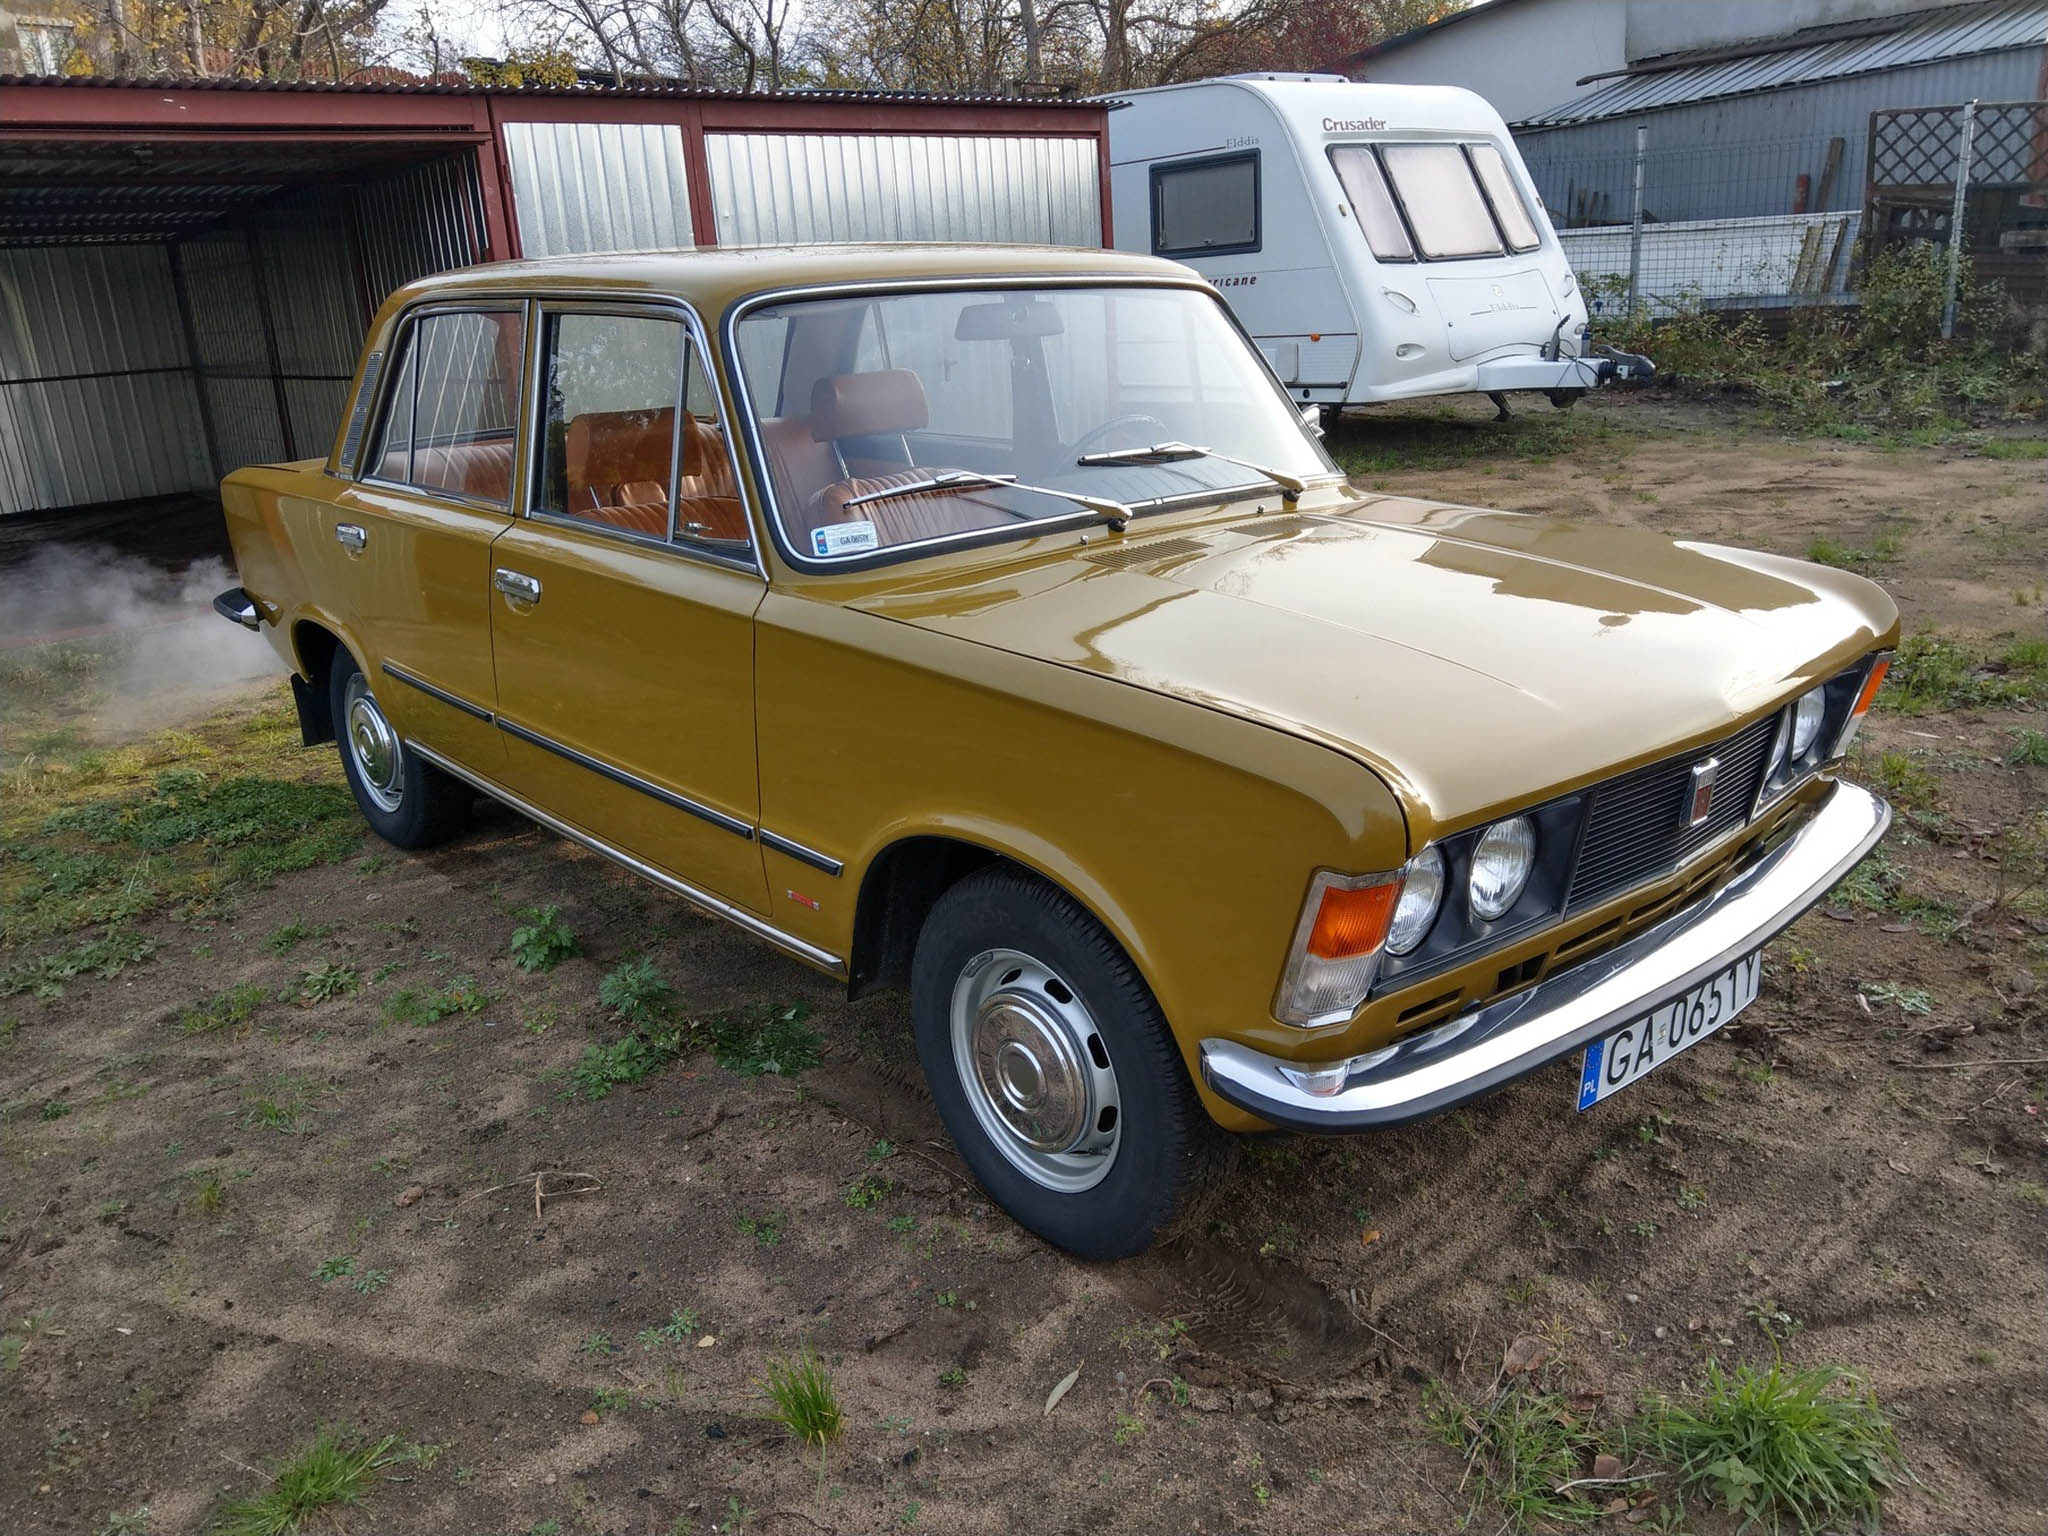 Polski Fiat 125p 1976 30000 PLN Gdynia Giełda klasyków